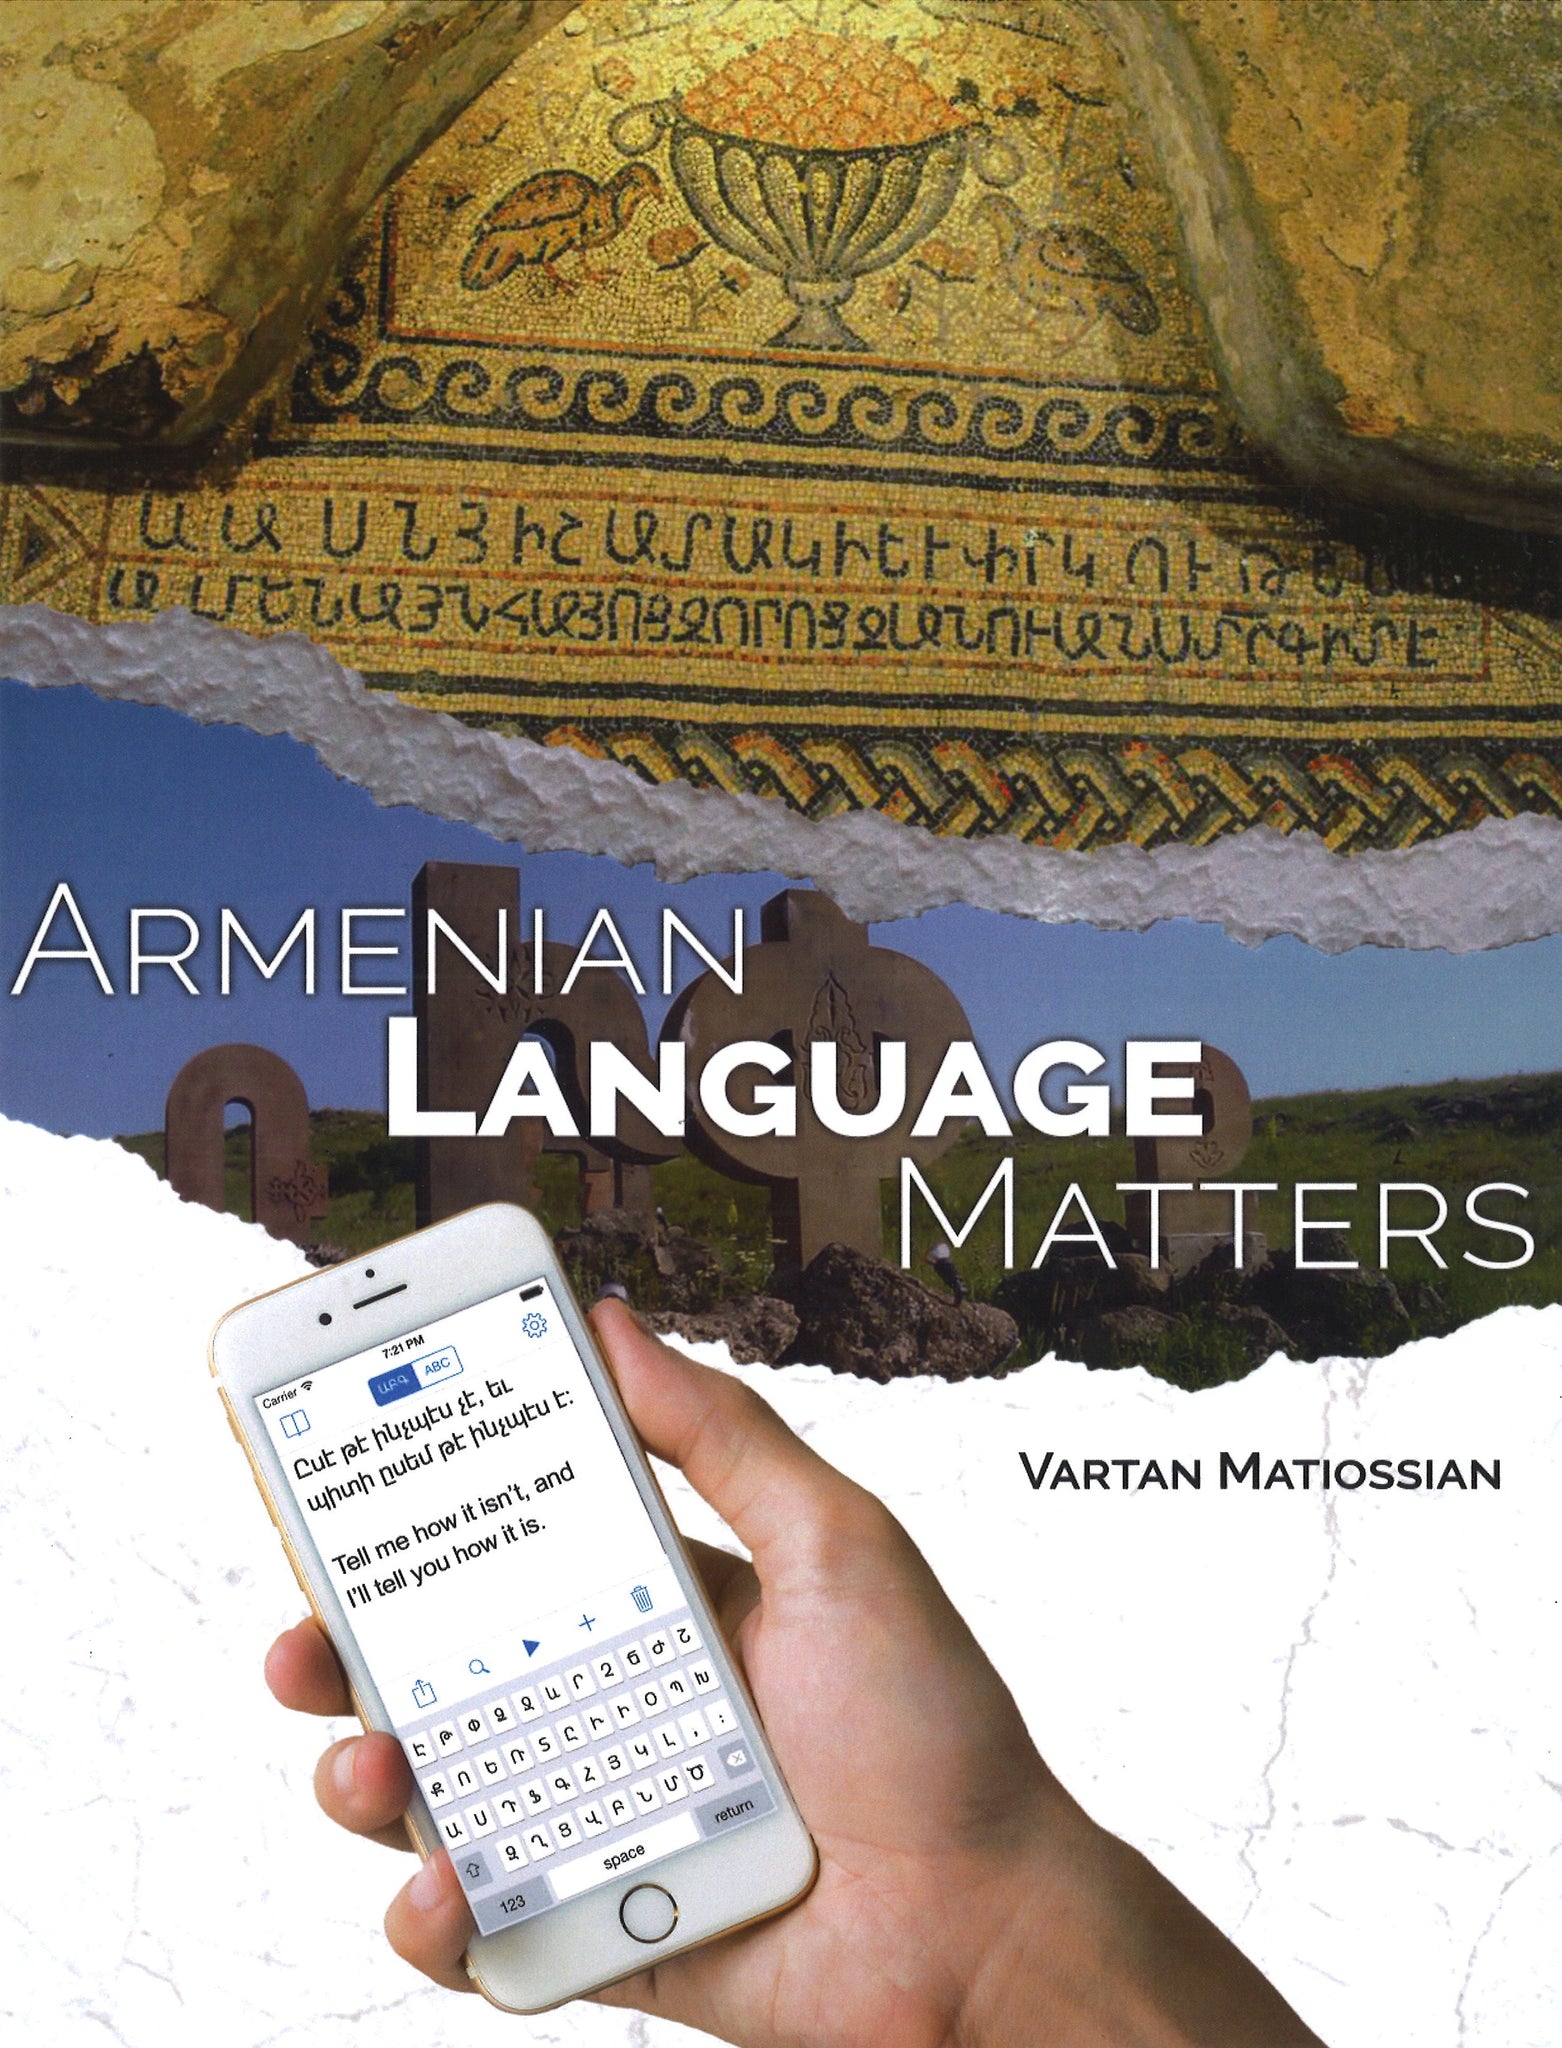 ARMENIAN LANGUAGE MATTERS